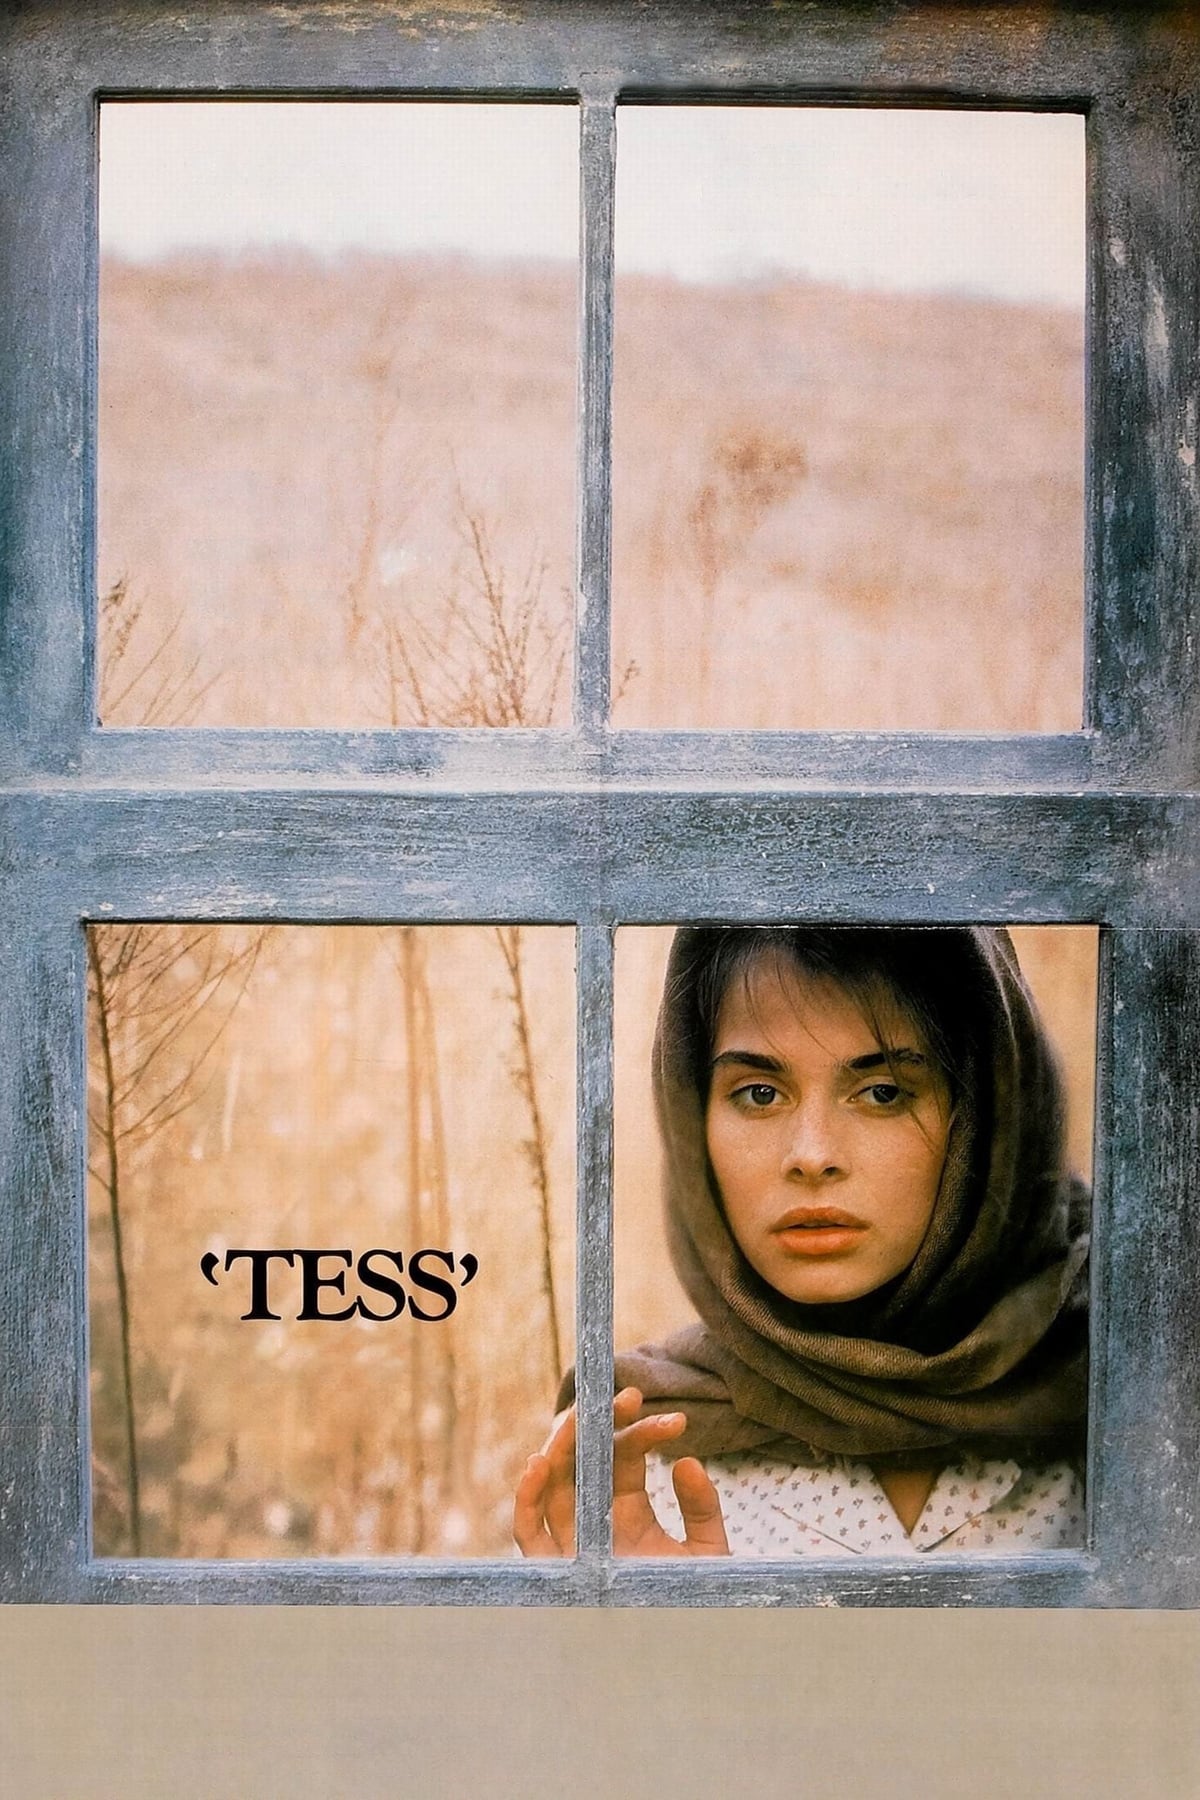 Tess - Uma Lição de Vida (1979)